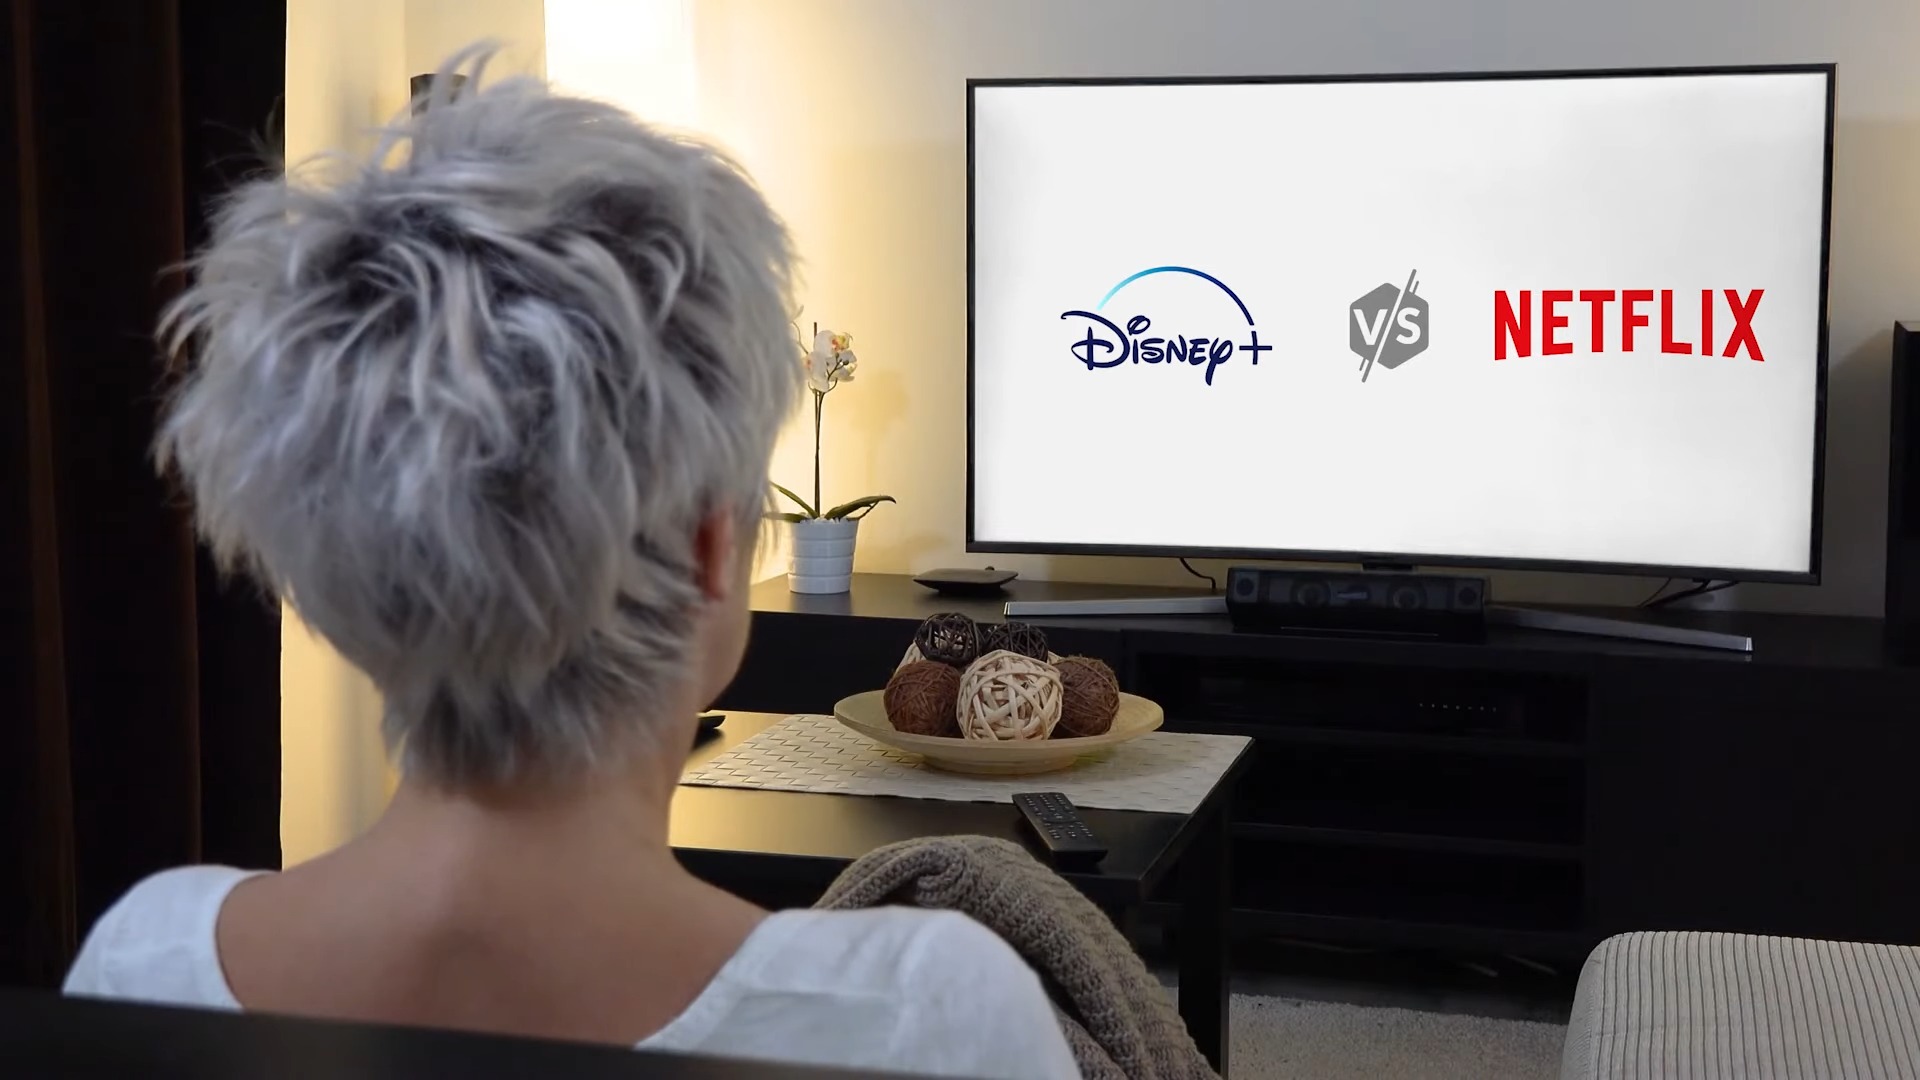 Netflix Vs Disney Plus verglichen: Welches ist besser?